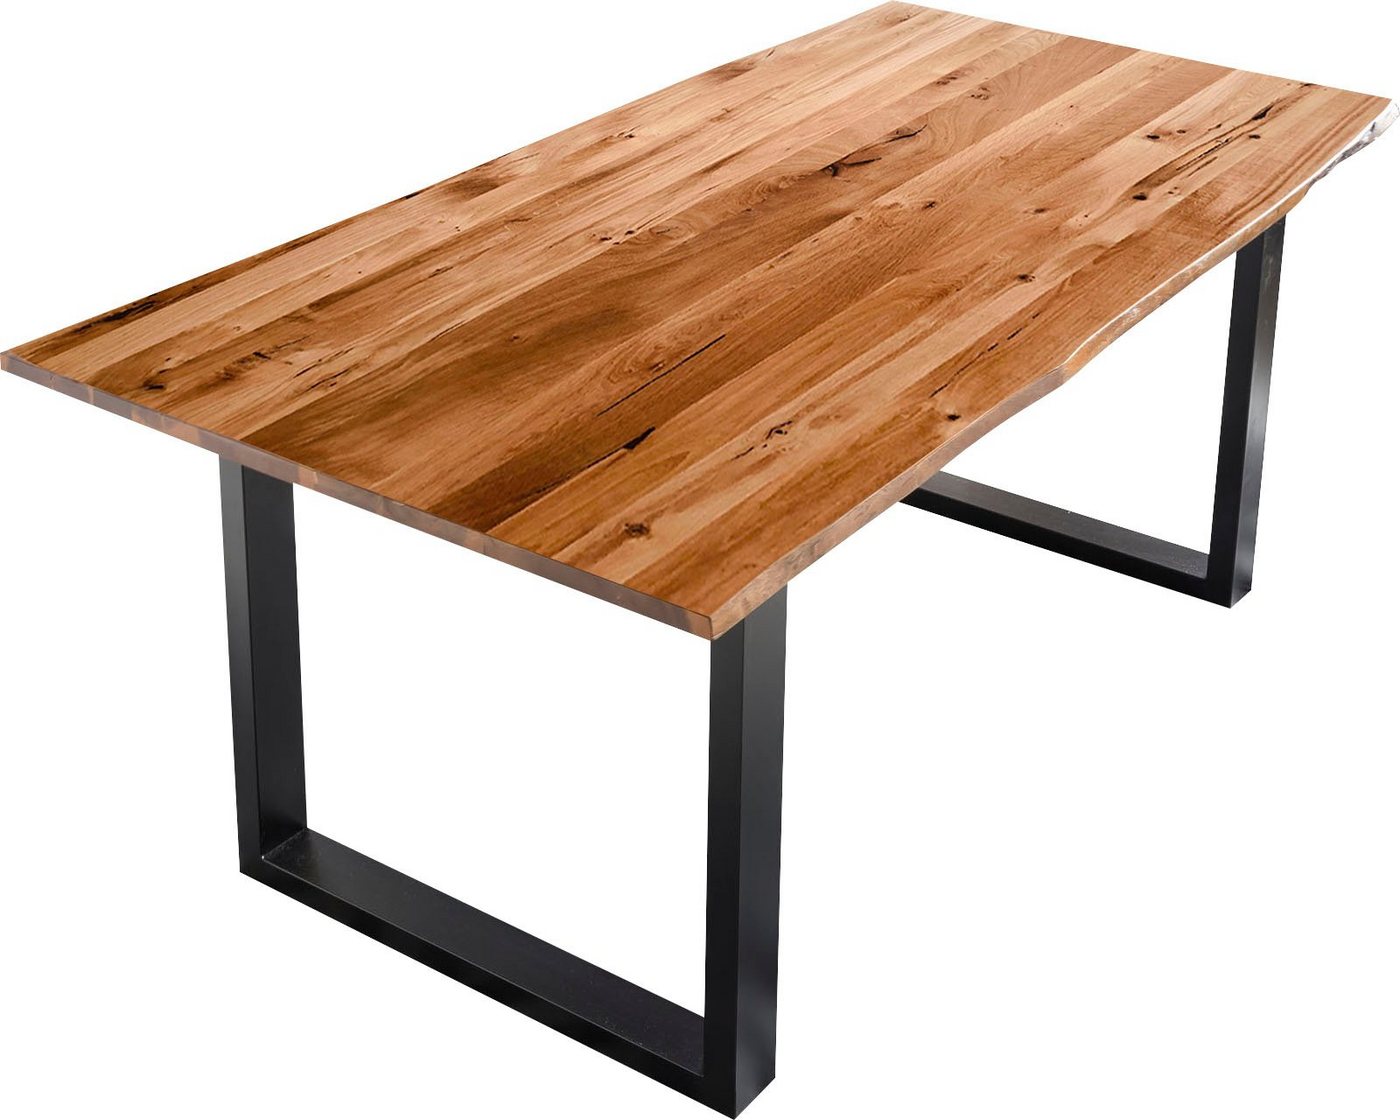 SalesFever Baumkantentisch, Sichtbare Maserung und Astlöcher, Esstisch aus Massivholz von SalesFever